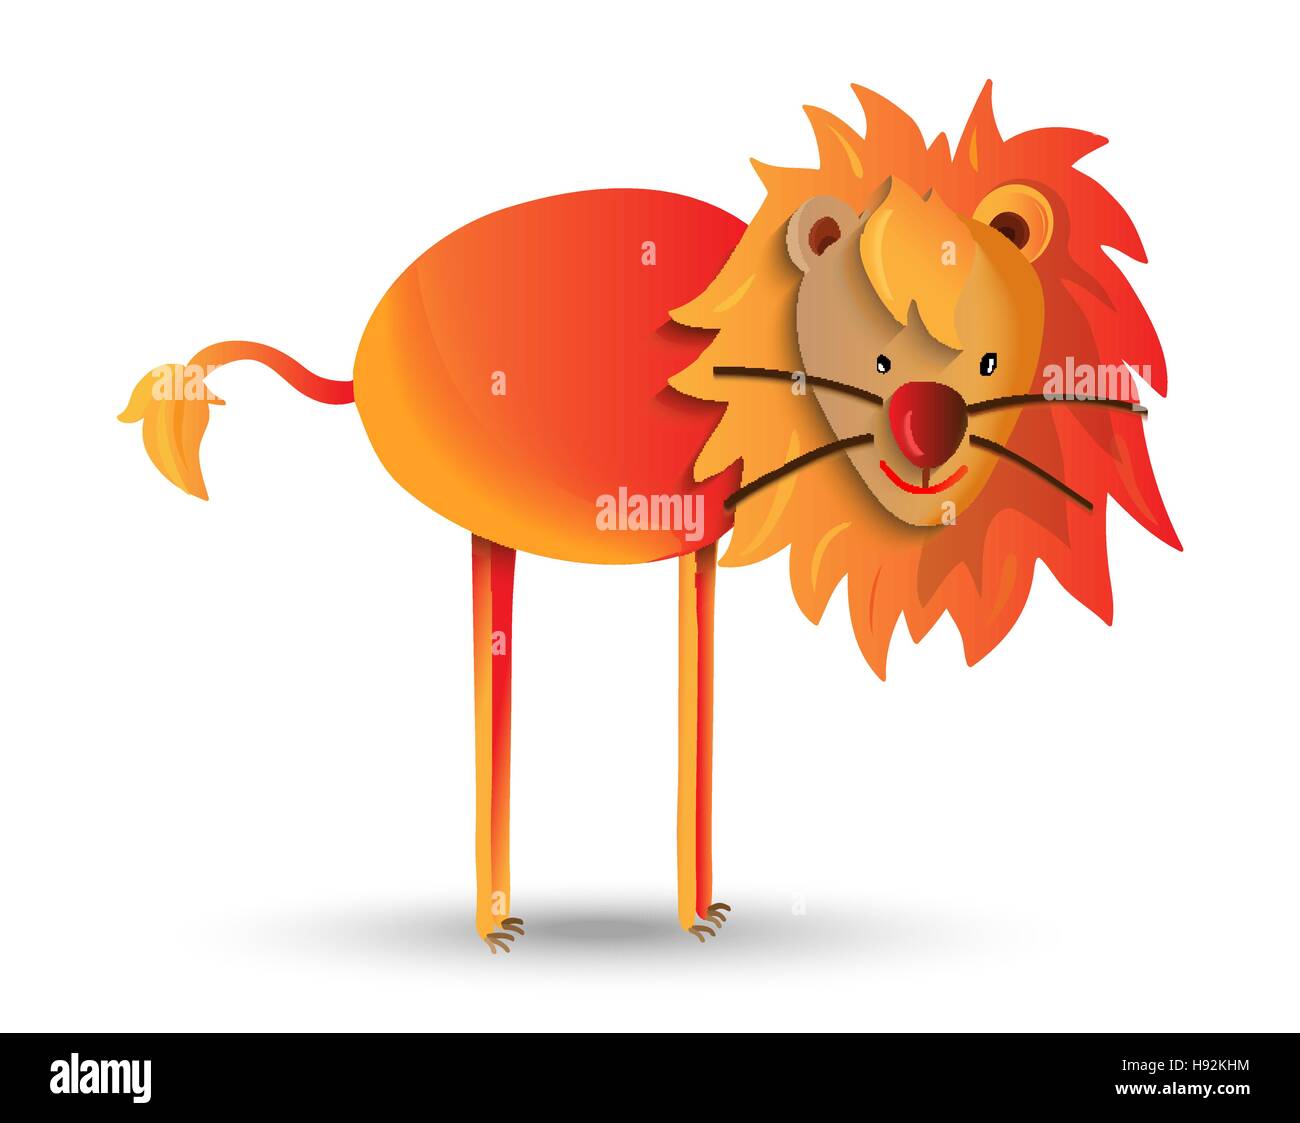 Cute animal salvaje cartoon ilustración, Selva Alegre león con melena. Ideal para niños o proyectos de educación. Vector EPS10. Ilustración del Vector